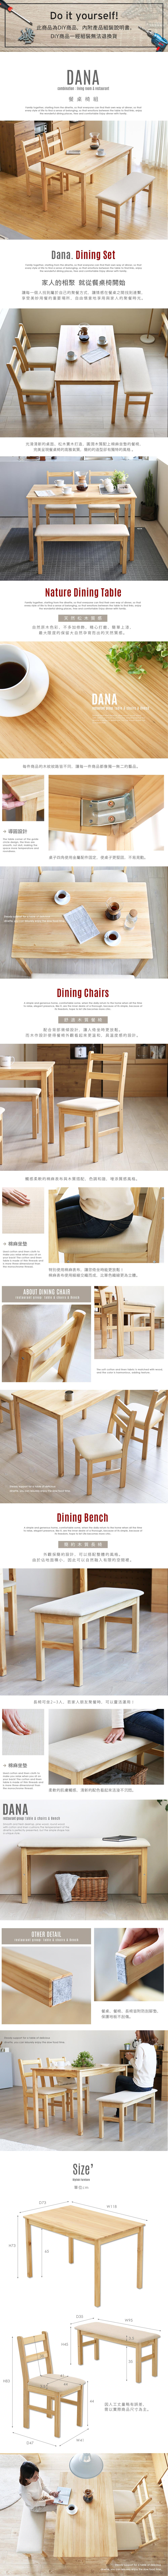 餐桌椅 MODERN DECO 黛納日式木作餐桌椅4件組(一桌二椅一凳)/DIY自行組裝